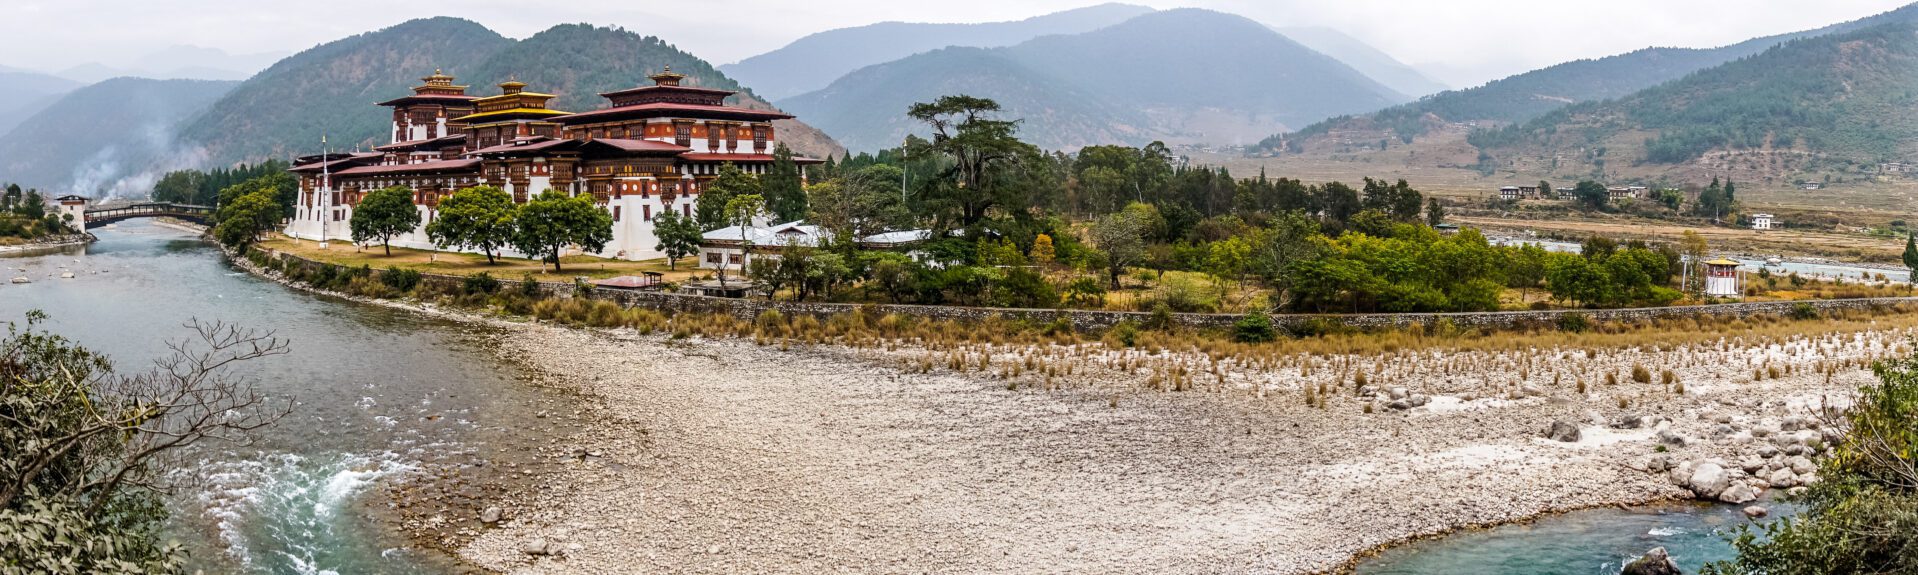 Bhutan reisinformatie voor jouw vakantie